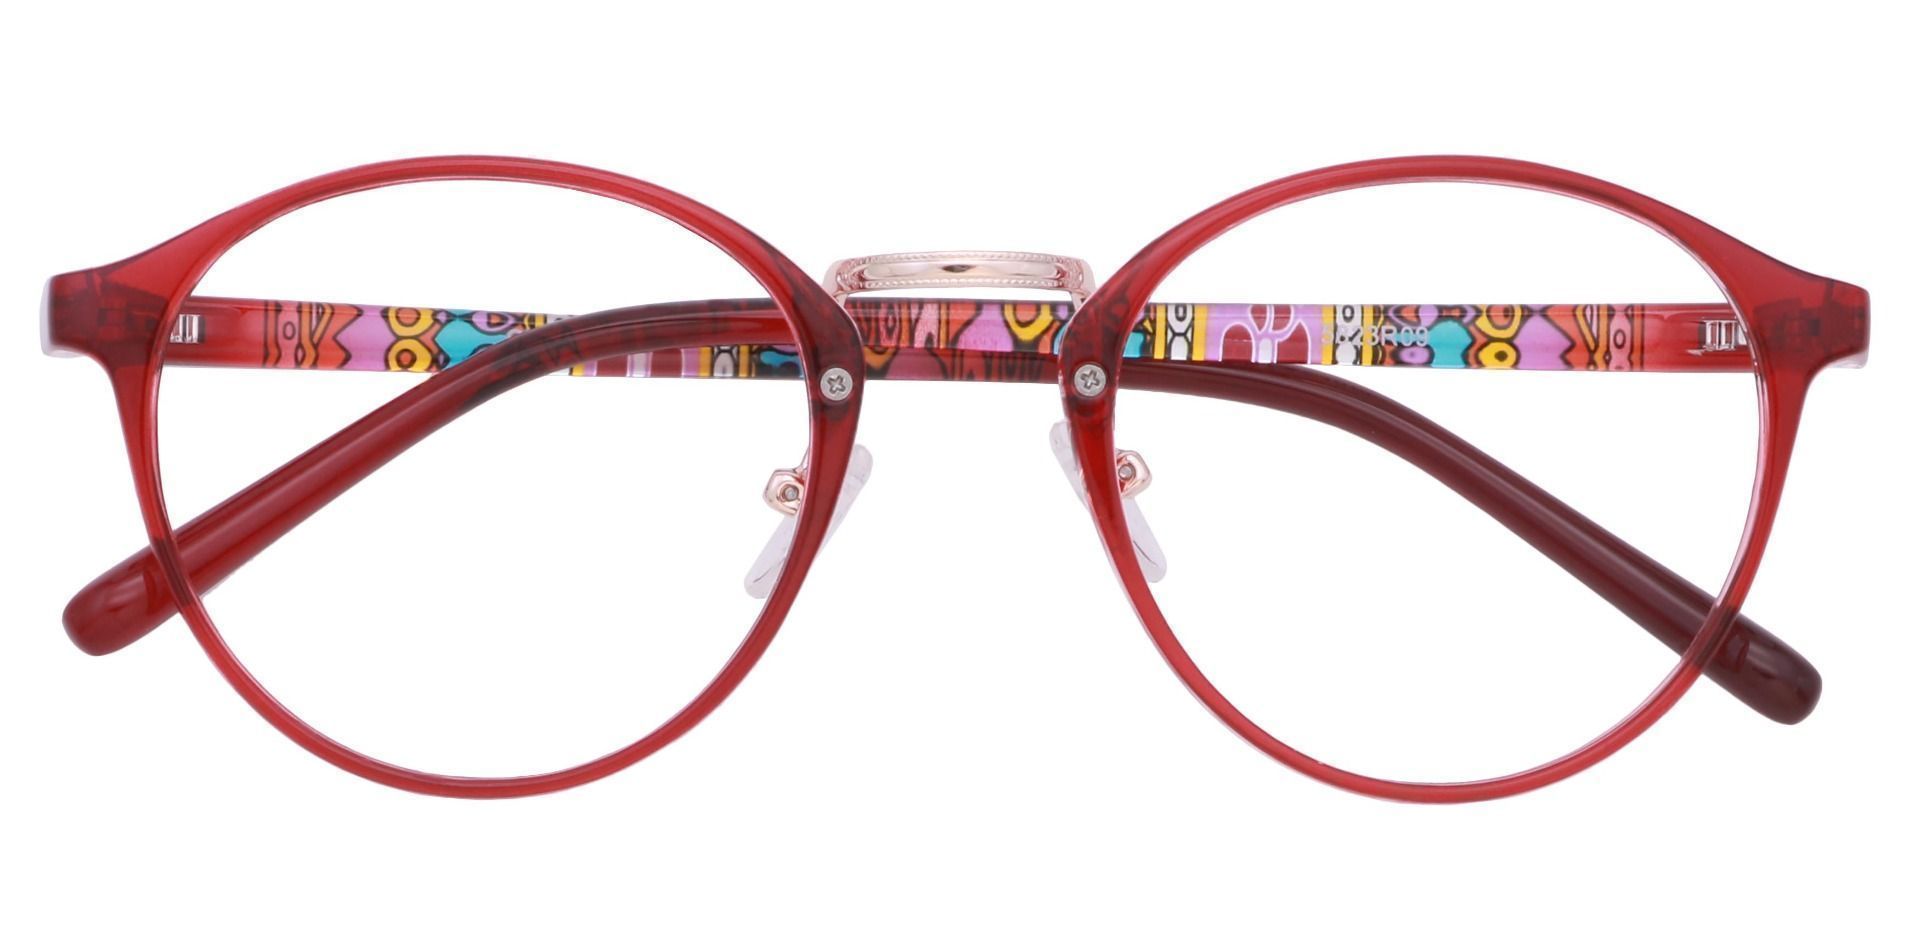 Bloom Oval Eyeglasses Frame - Red